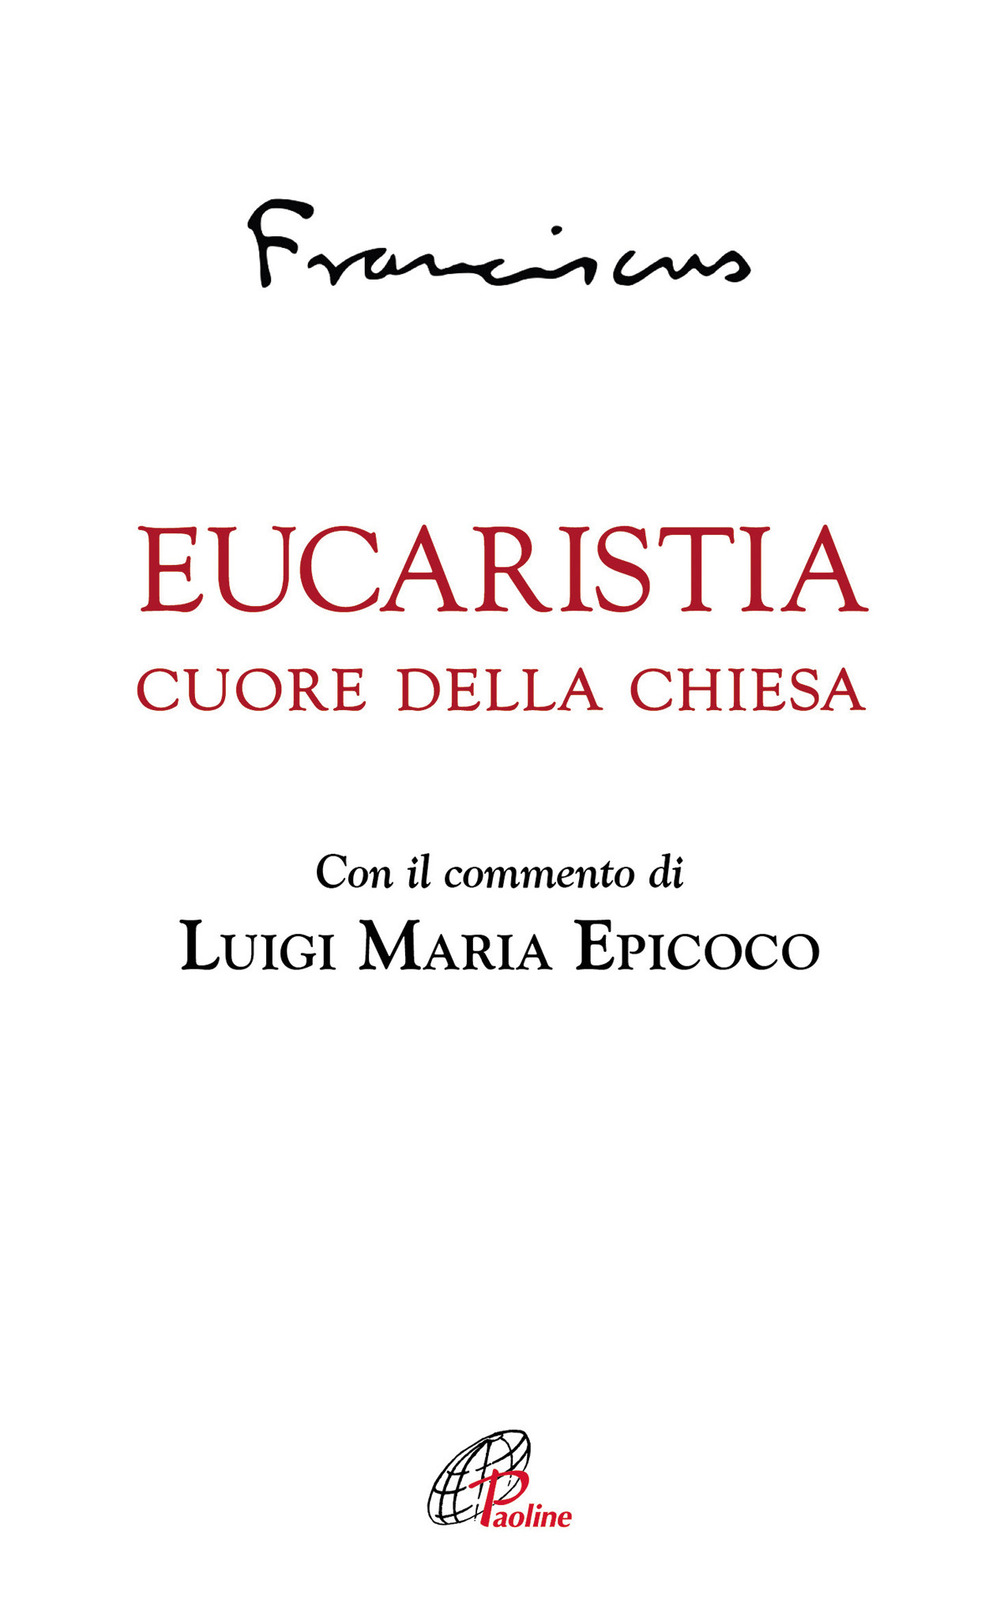 Image of Eucaristia. Cuore della Chiesa